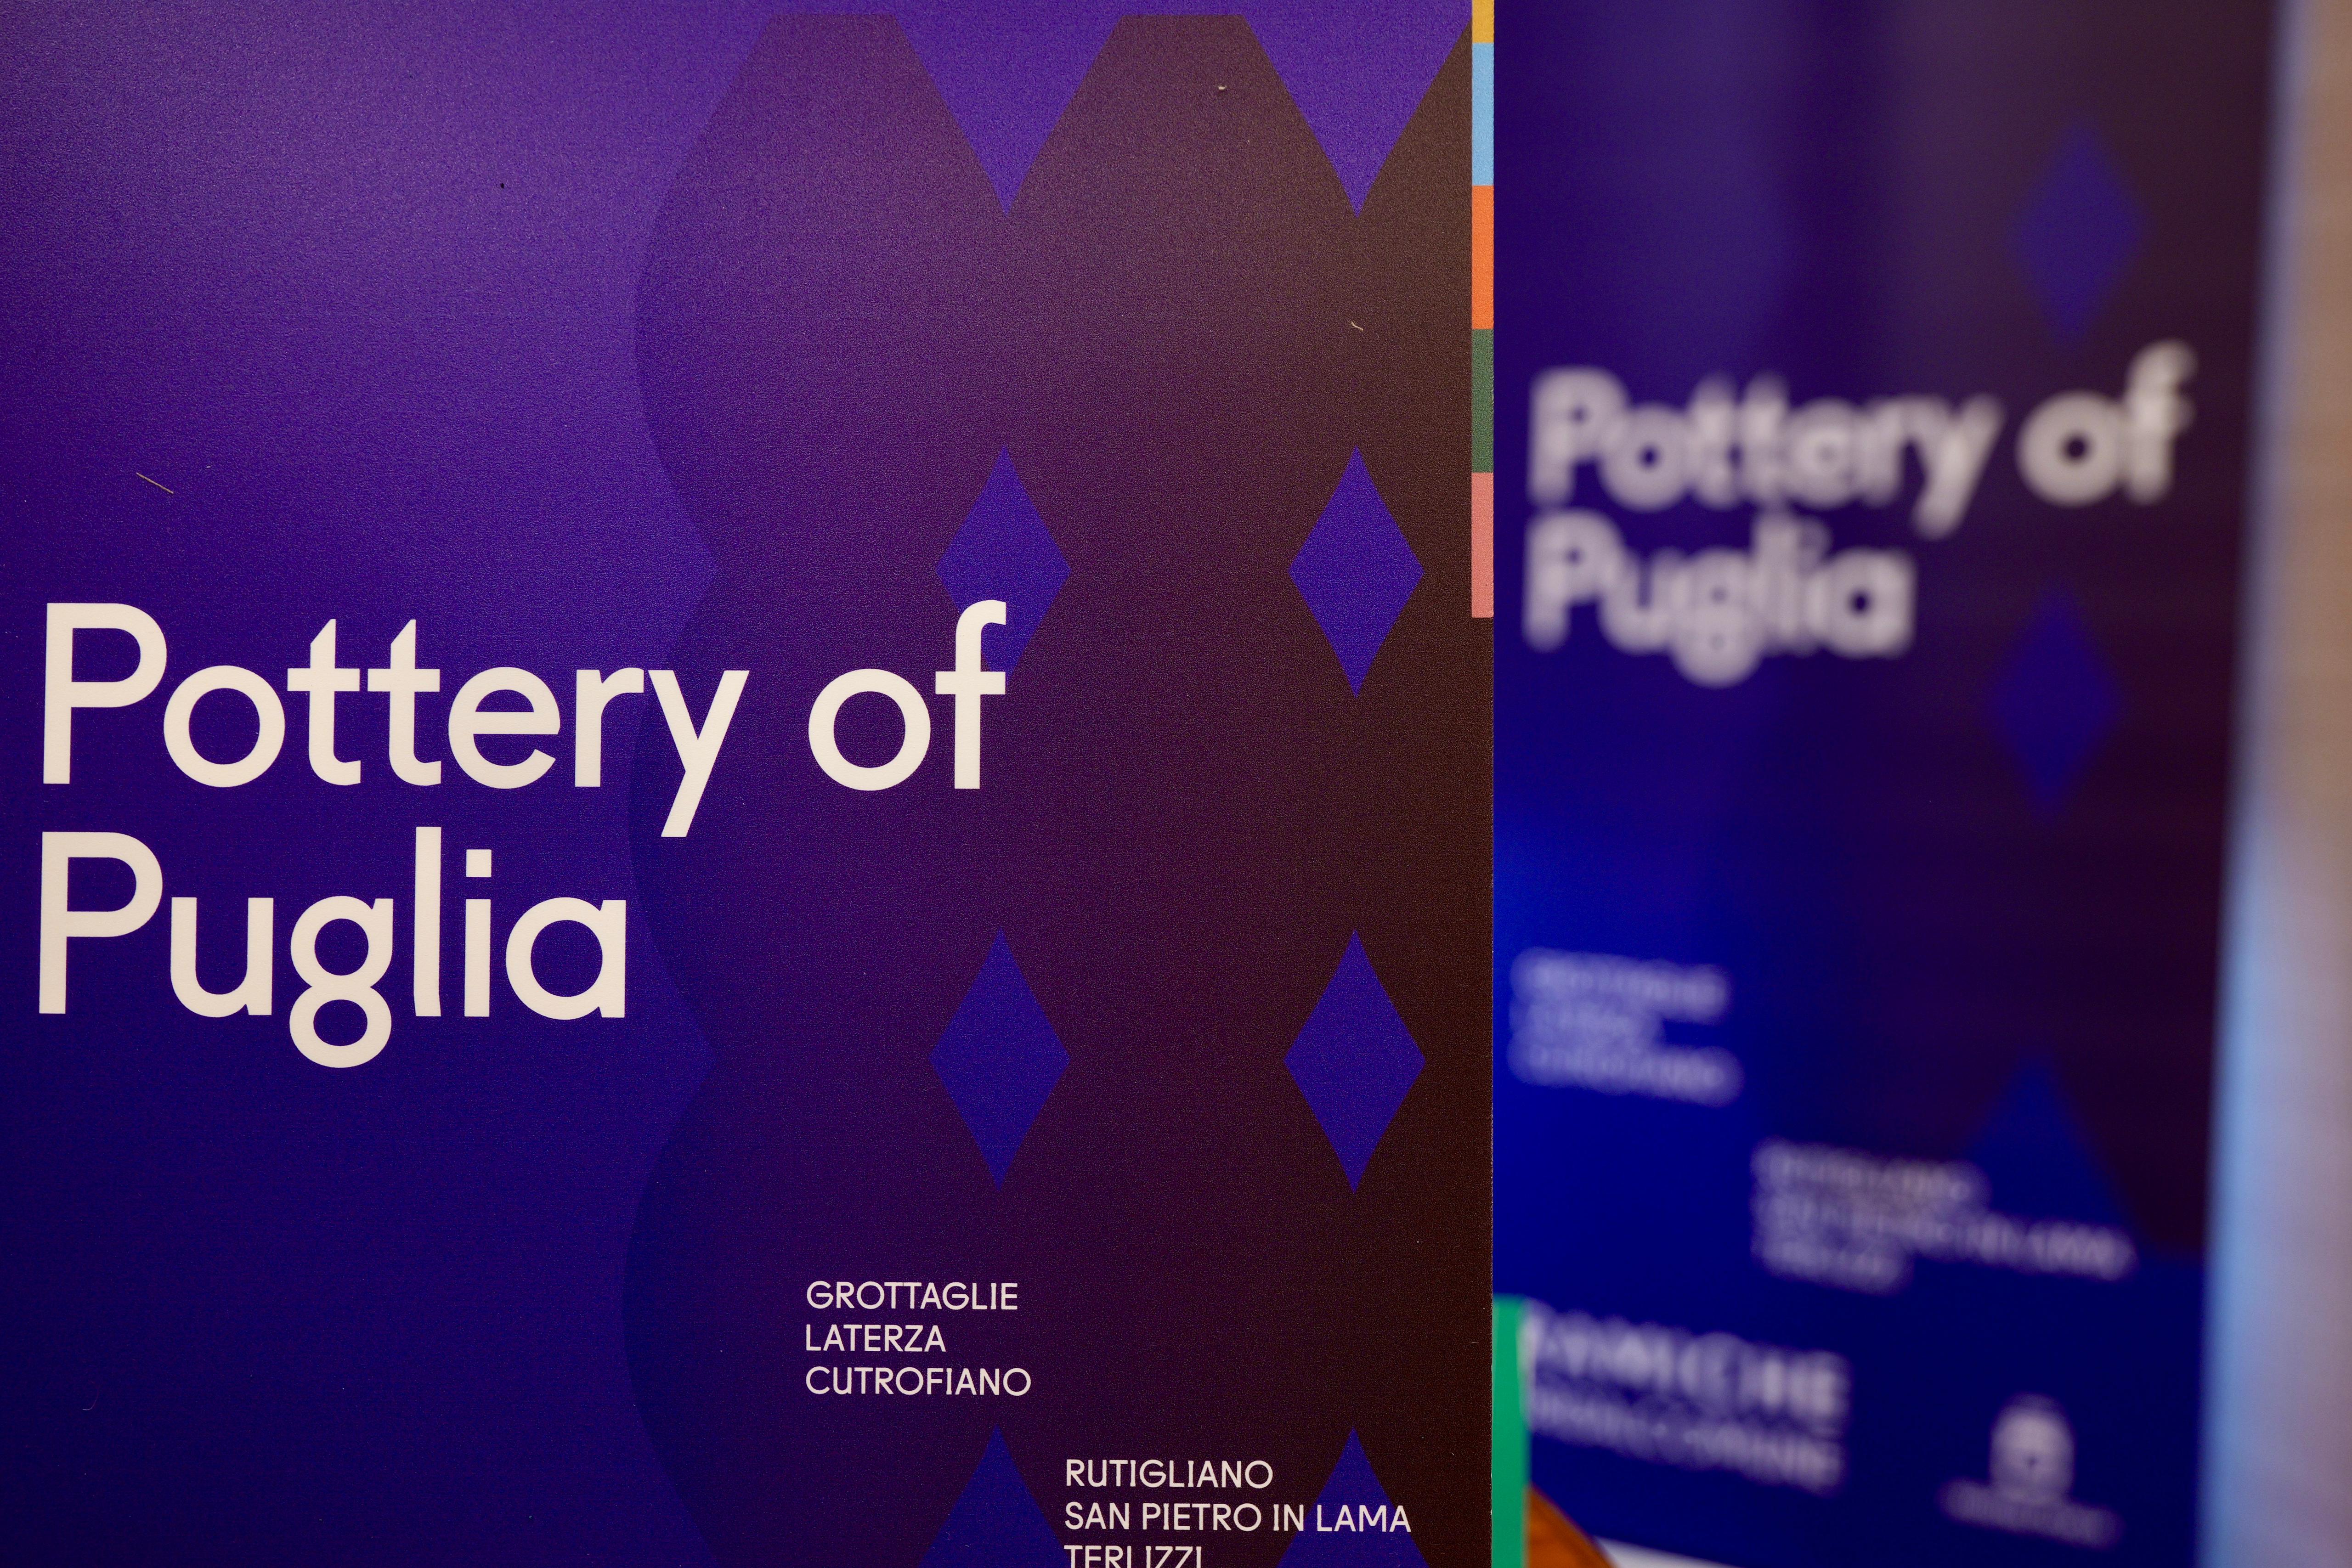 Galleria La ceramica pugliese è POP! Presentato il nuovo brand “Pottery of Puglia” - Diapositiva 4 di 12